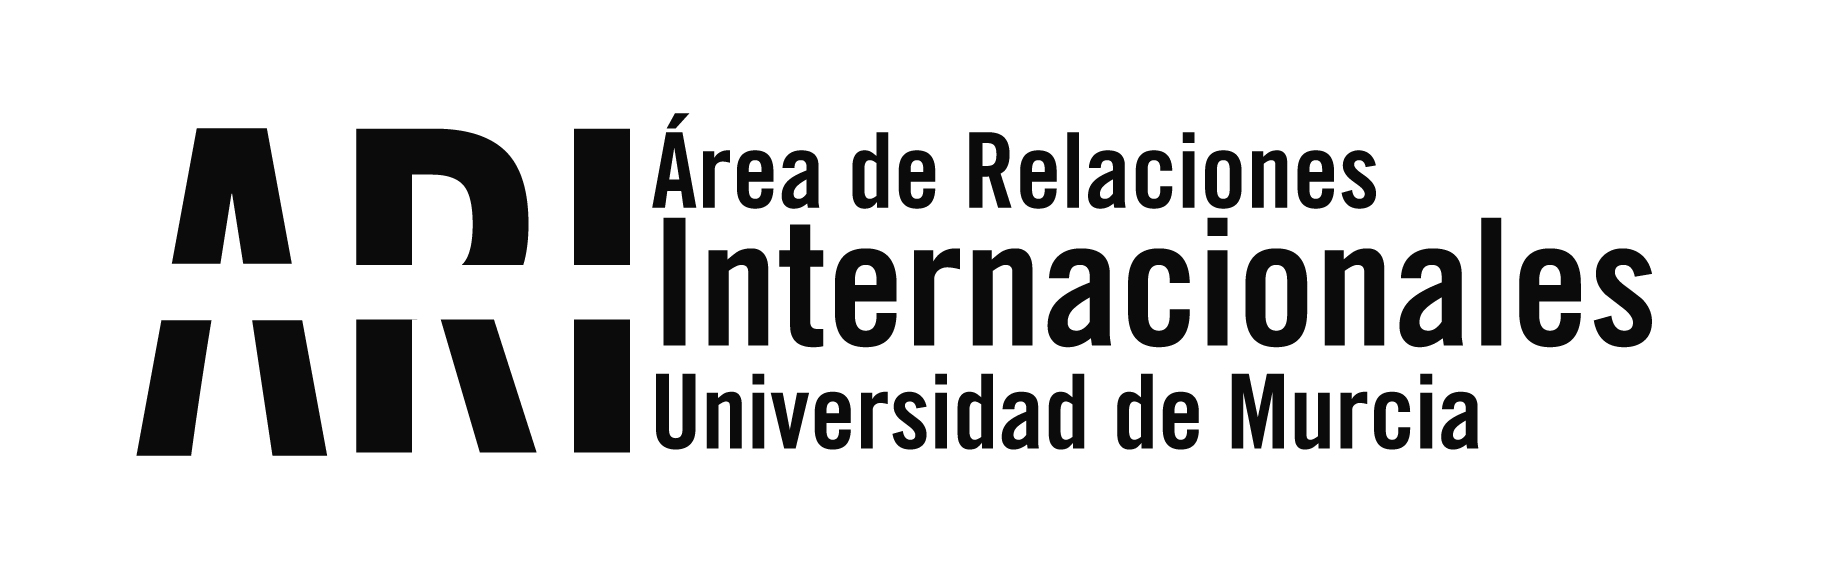 Boletín informativo/Newsletter nº 15 del Vicerrectorado de Internacionalización de la UMU del lunes 12 de noviembre de 2018 - Área de Relaciones Internacionales